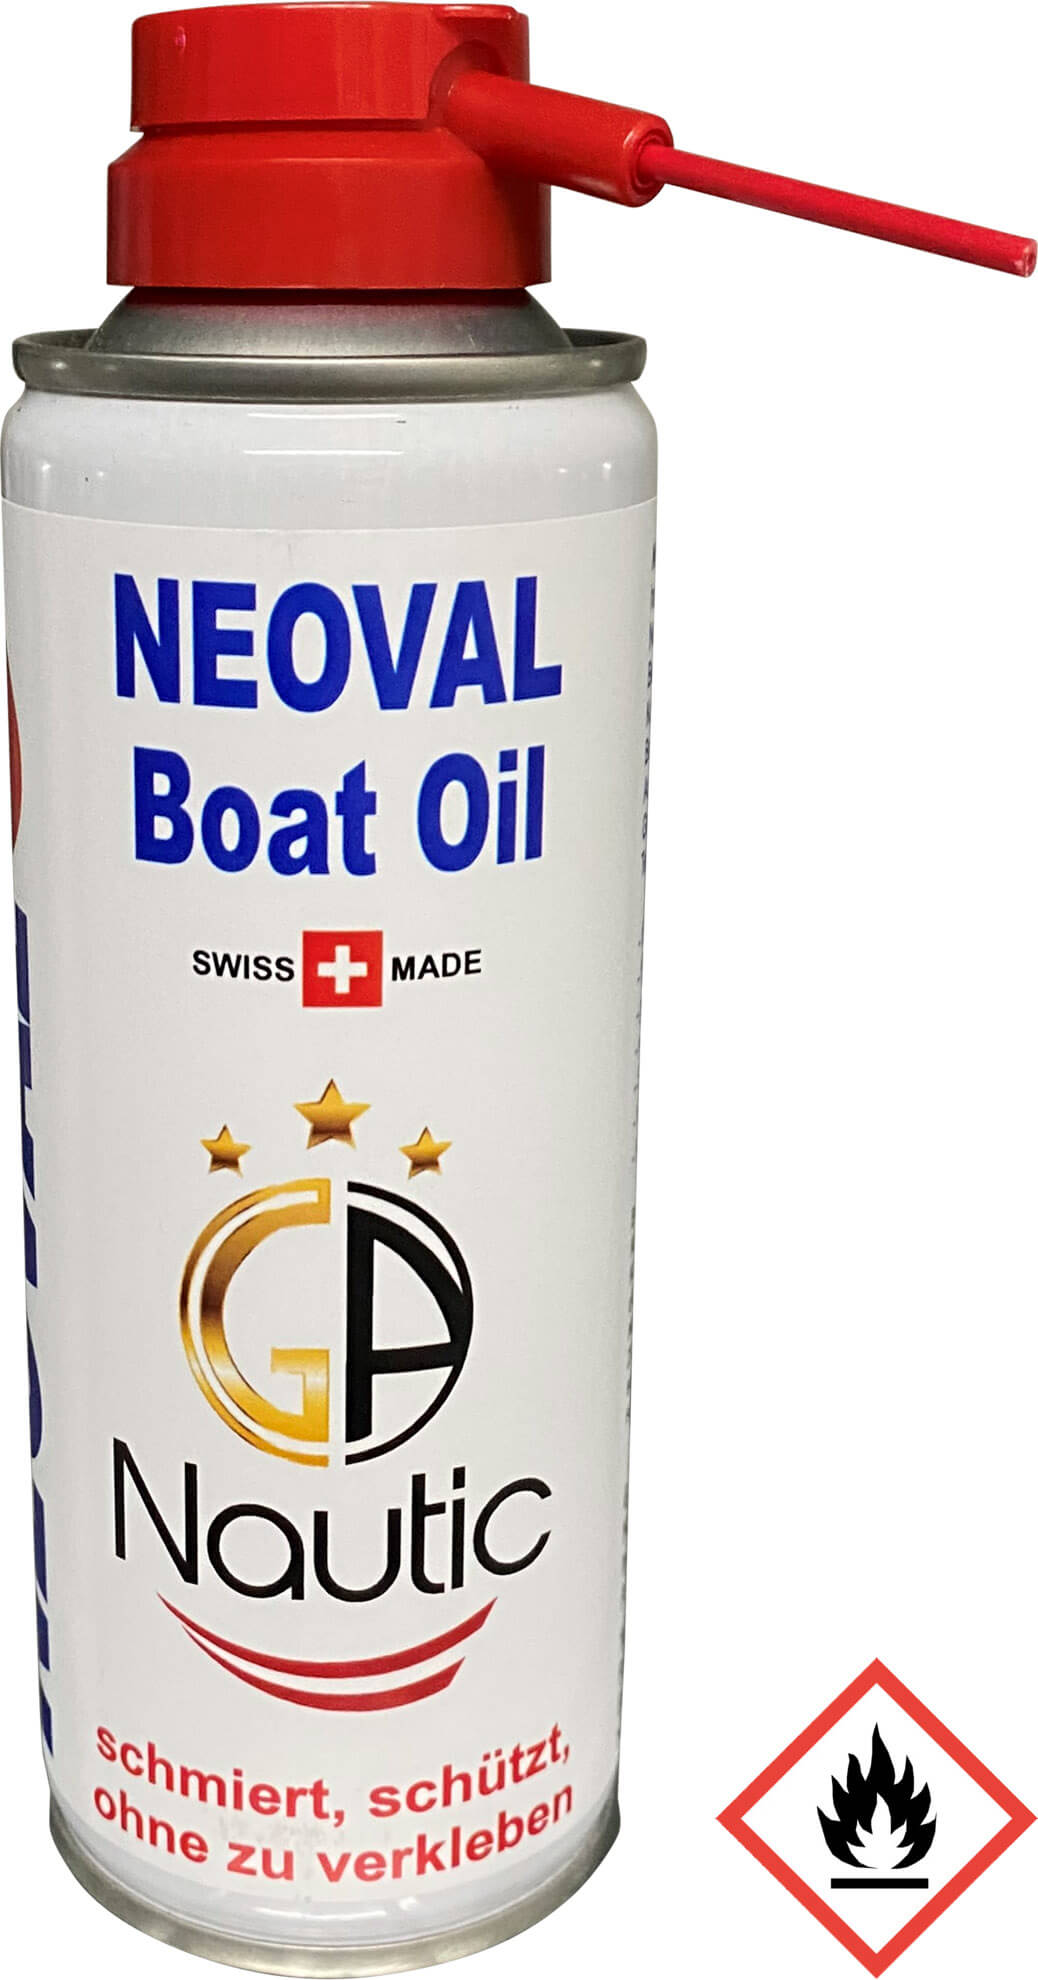 NEOVAL Boat Oil